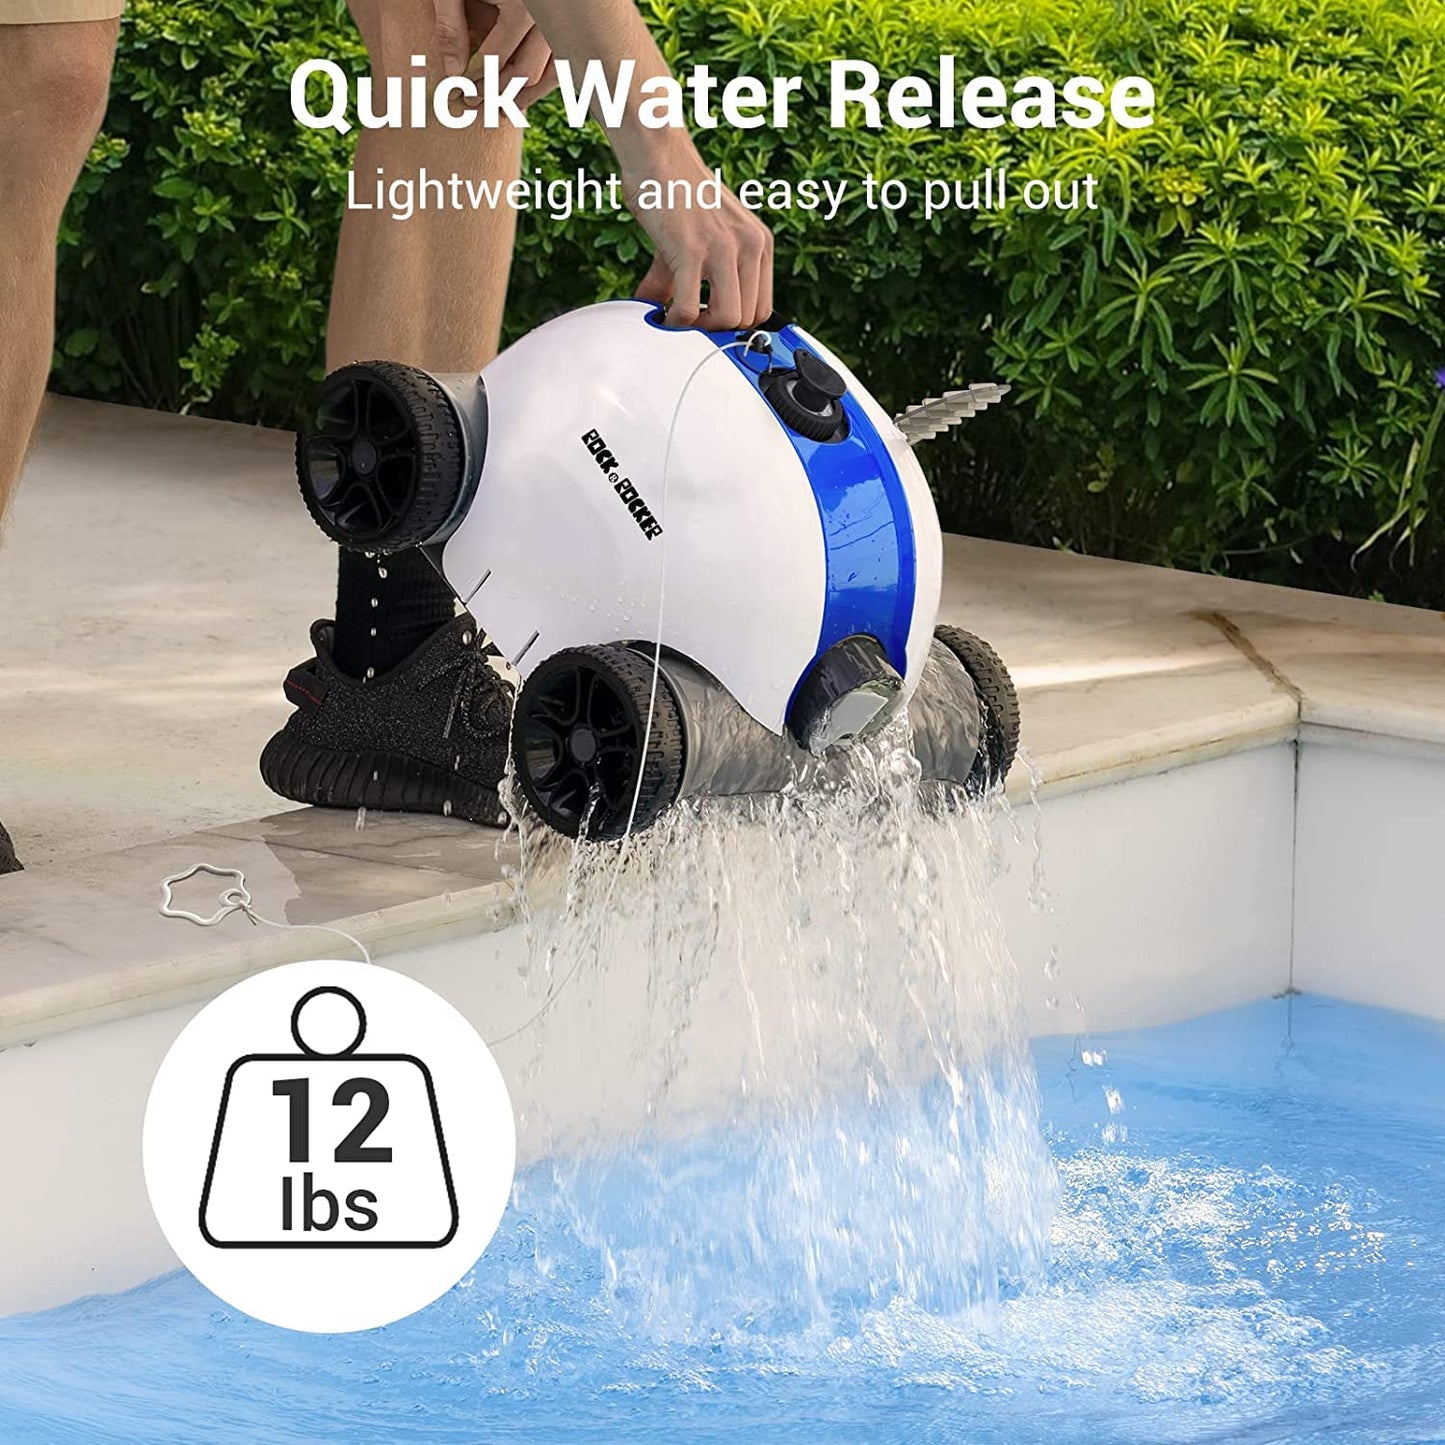 Robot nettoyeur de piscine sans fil, aspirateur de piscine automatique avec 60 à 90 minutes de temps de travail, batterie rechargeable, étanche IPX8 pour piscines hors sol/enterrées jusqu'à 861 m²